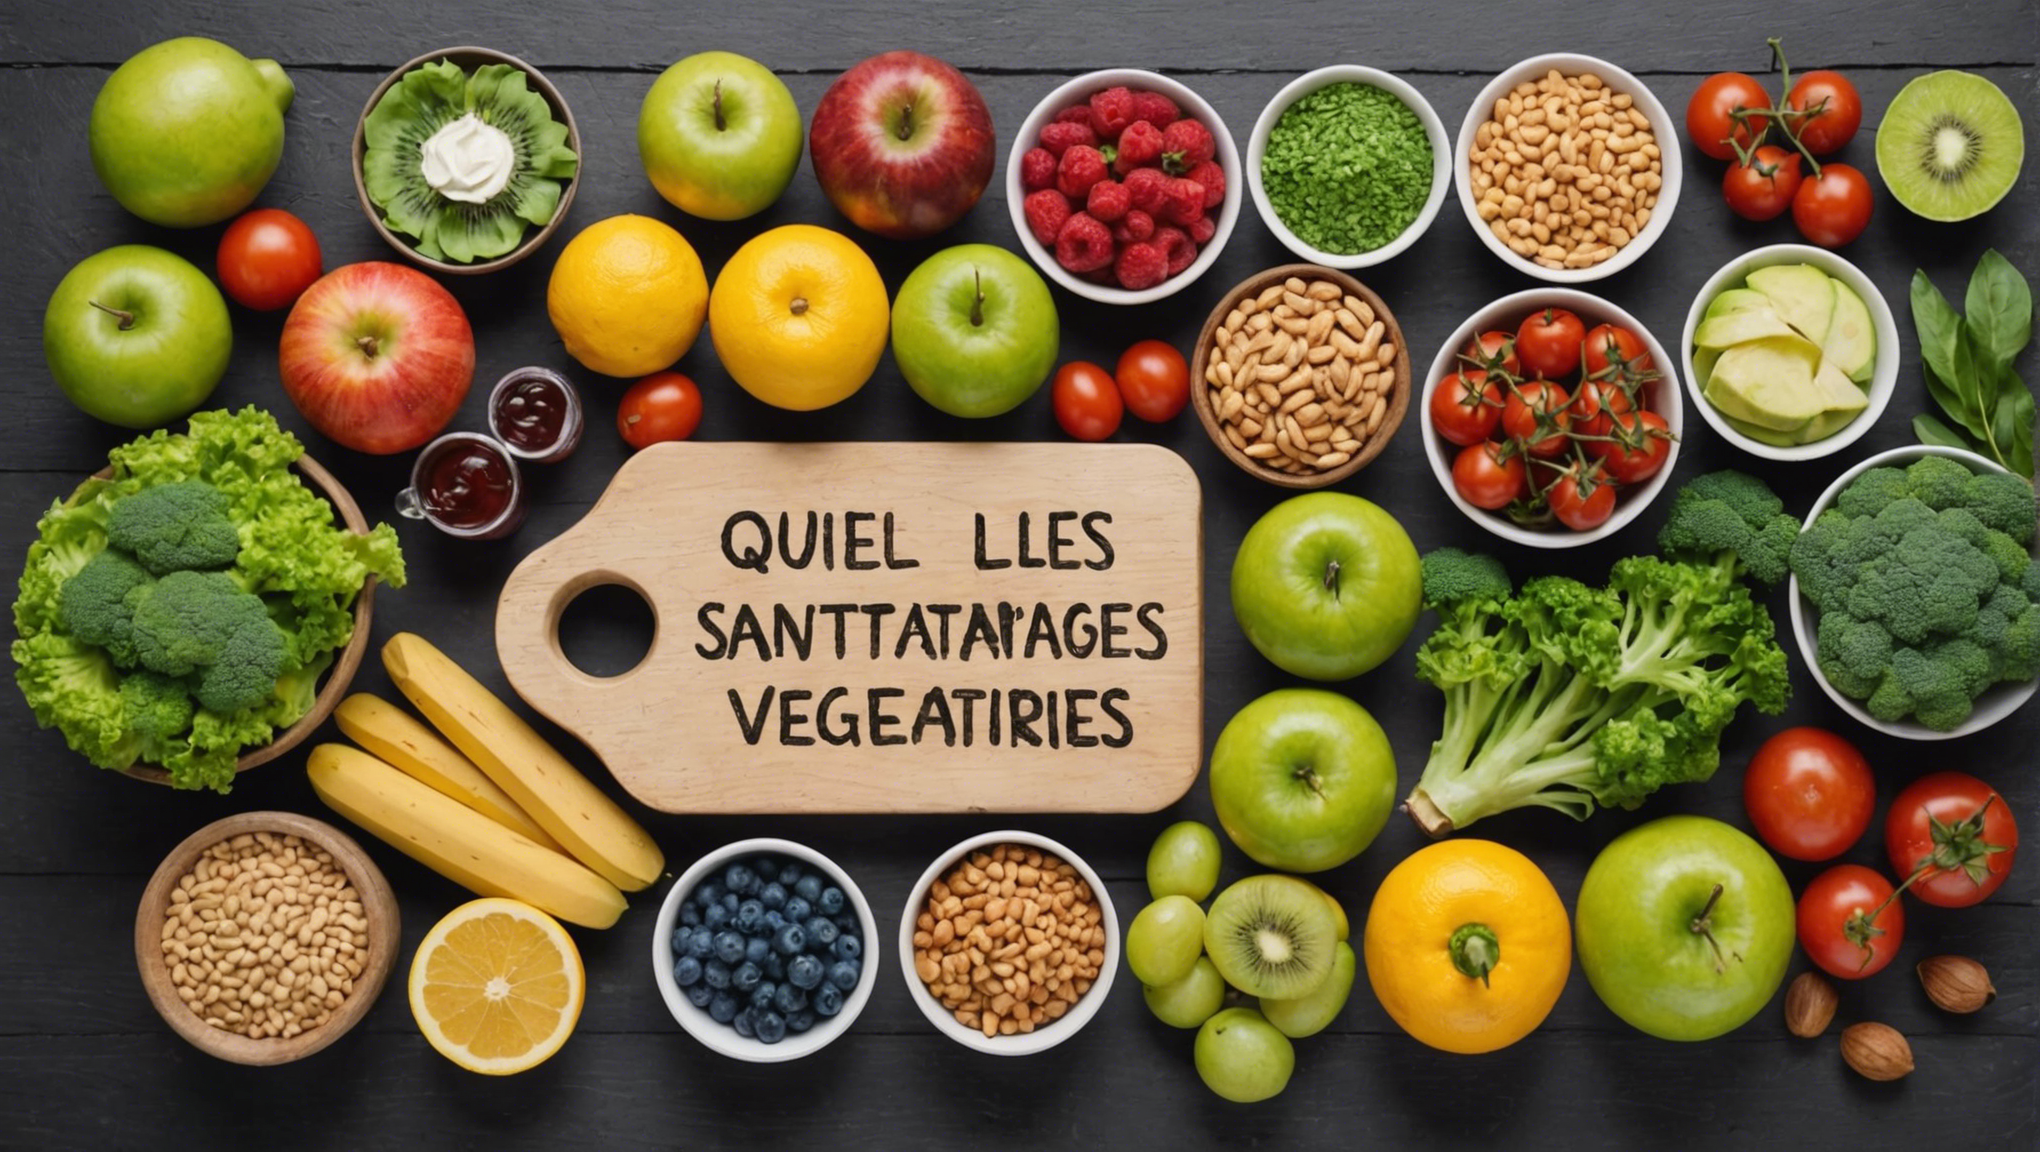 découvrez les bienfaits pour la santé des aliments végétariens et les avantages d'une alimentation végétarienne grâce à cet article informatif.